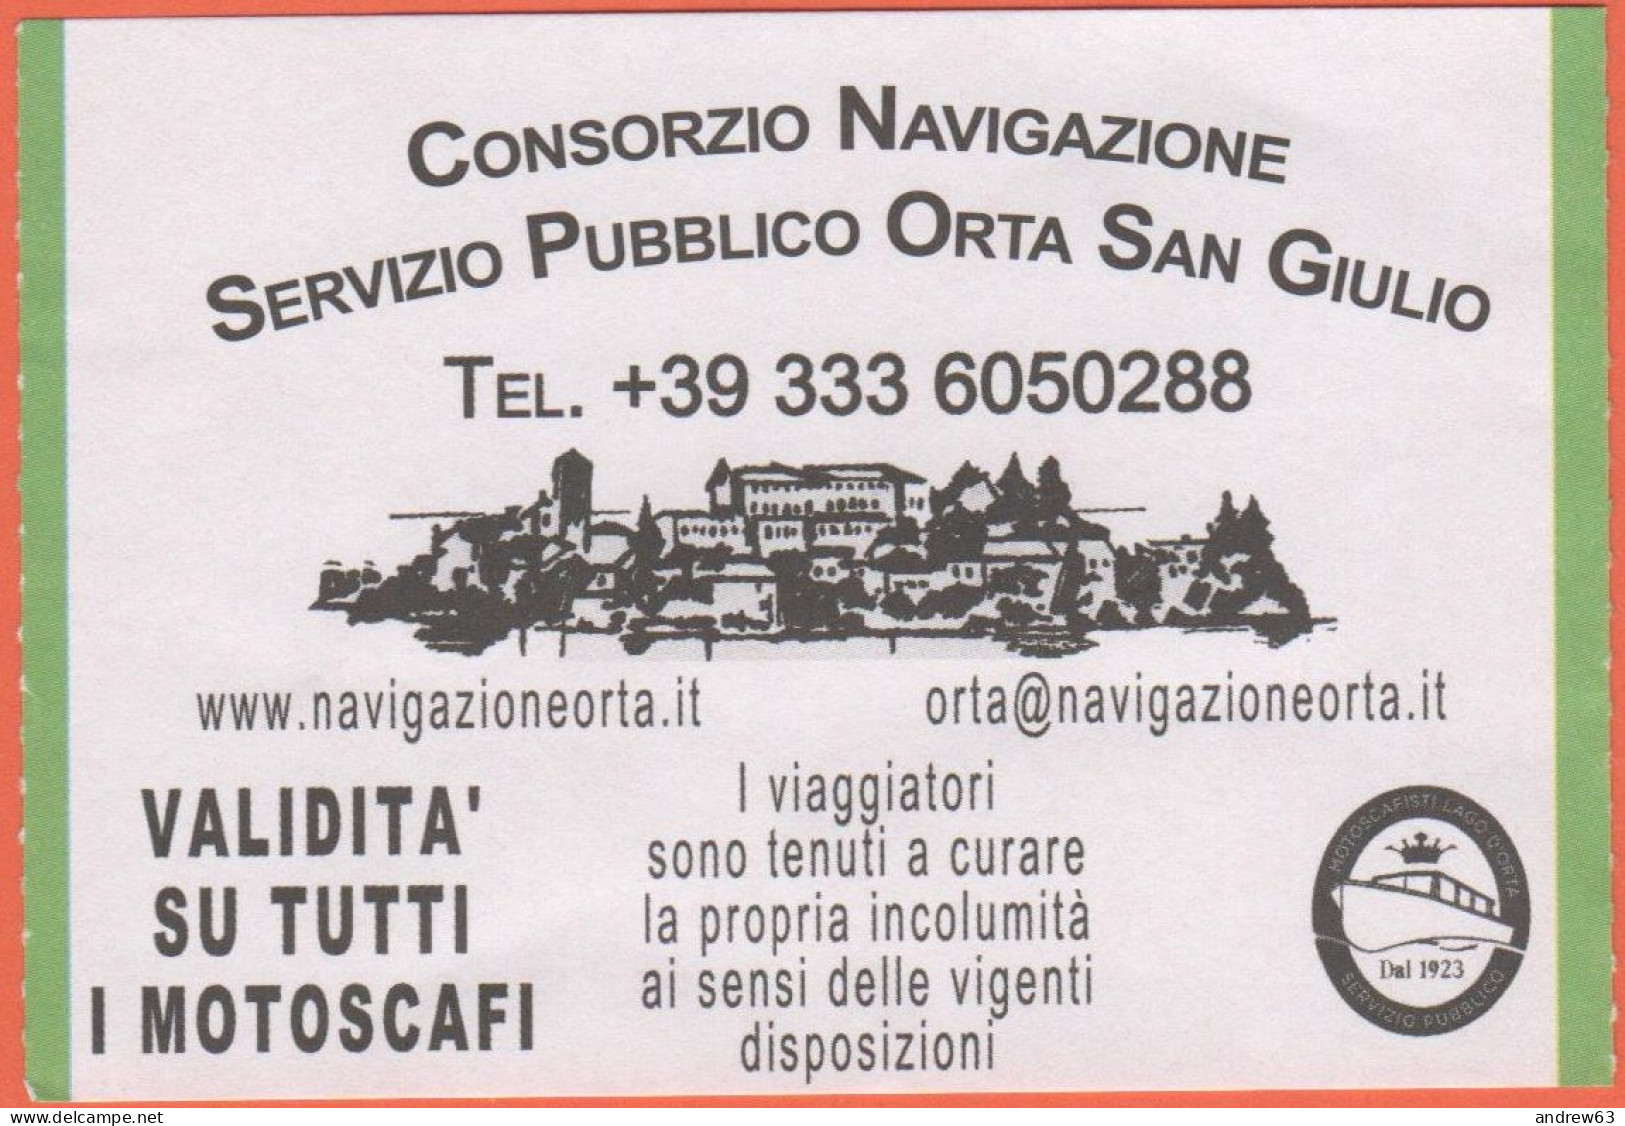 Consorzio Di Navigazione - Servizio Pubblico Orta San Giulio - Biglietto Di Corsa Semplice - Usato - Europe